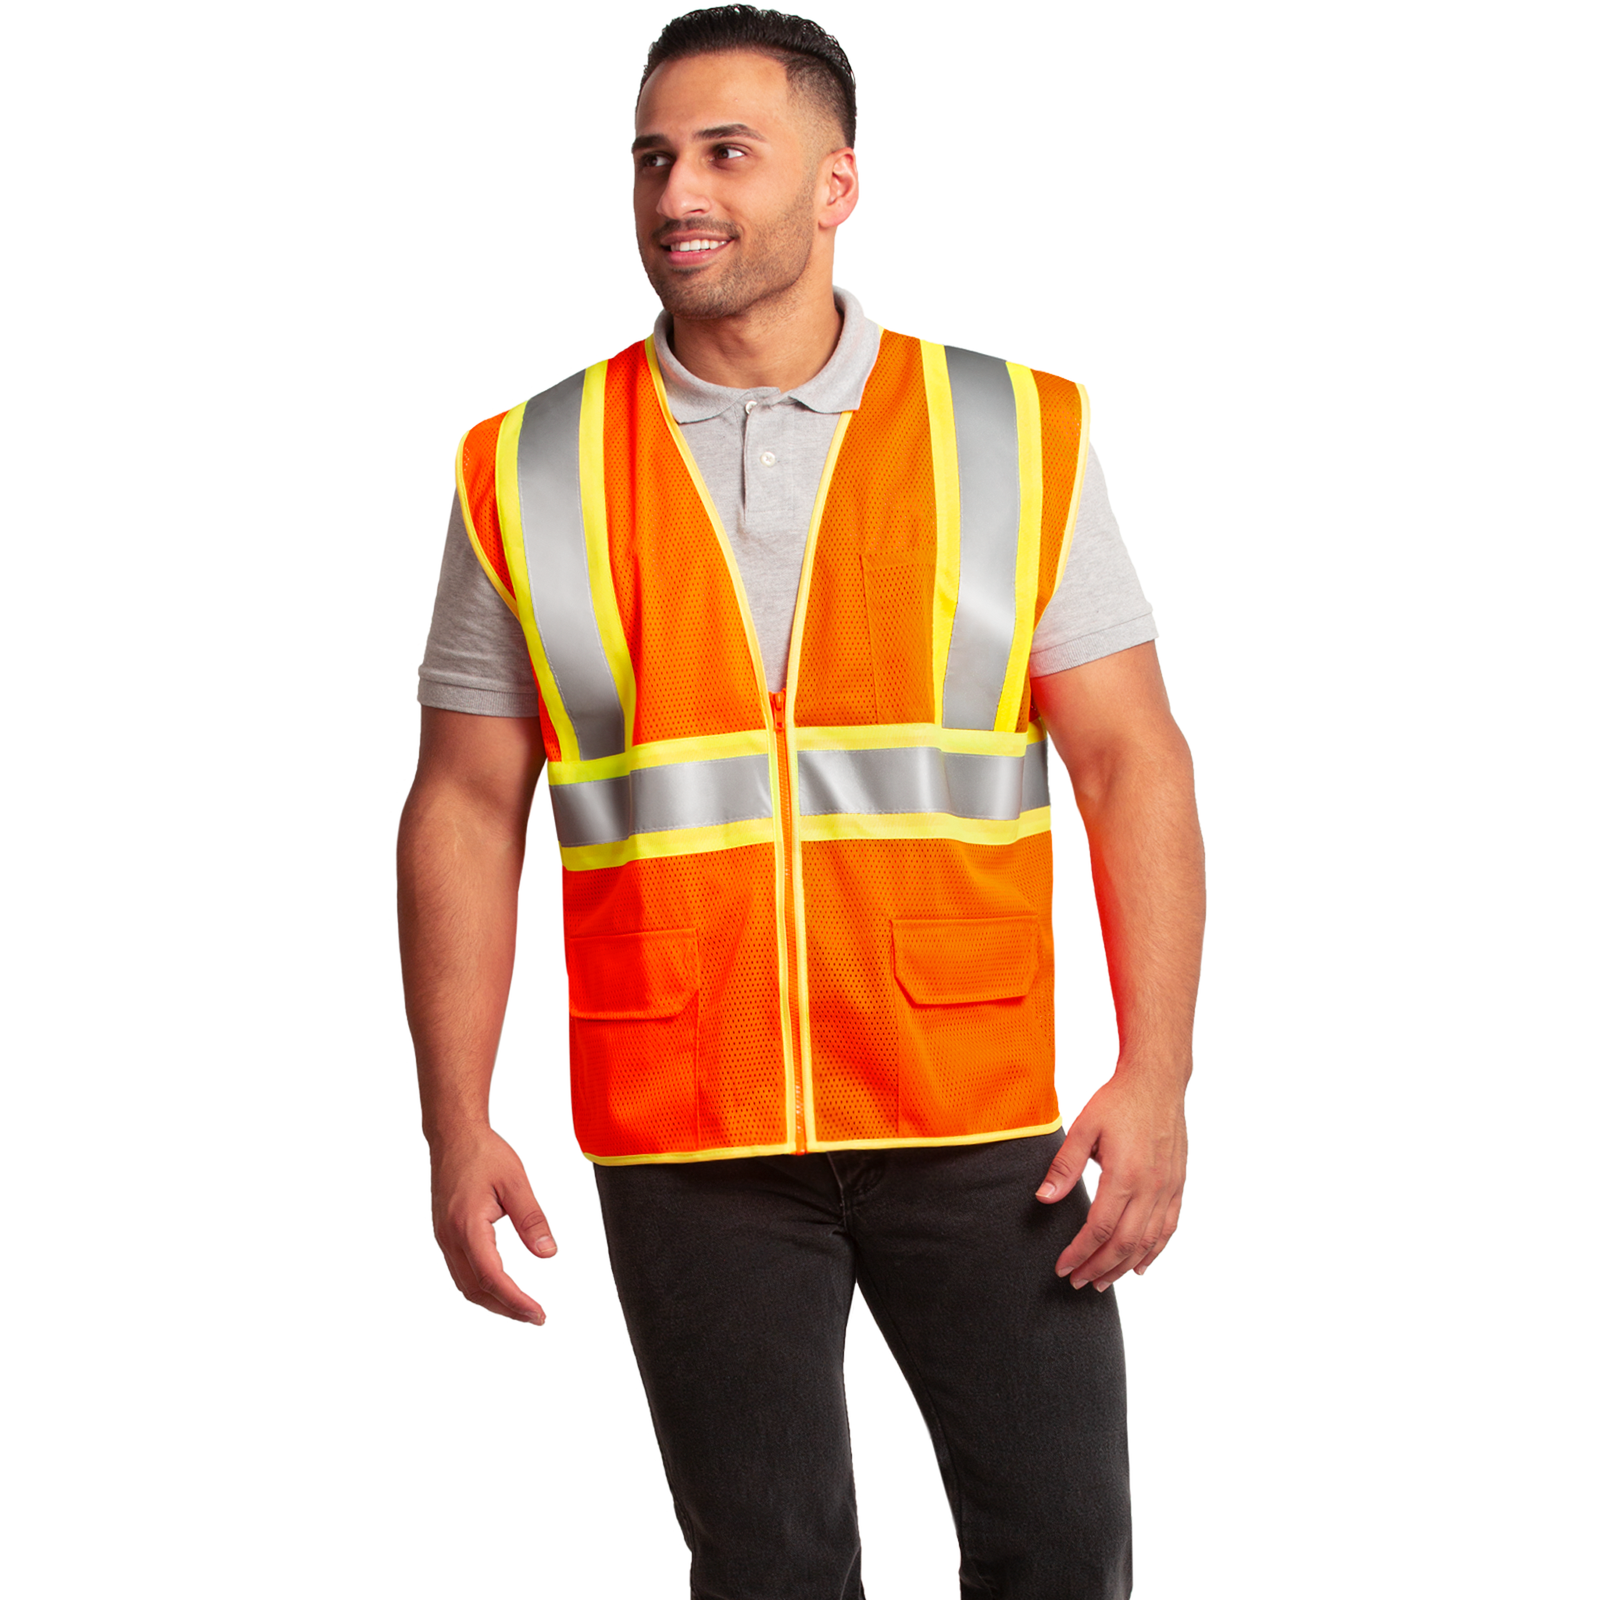 A man wearing a hi vis two toned orange safety vest 